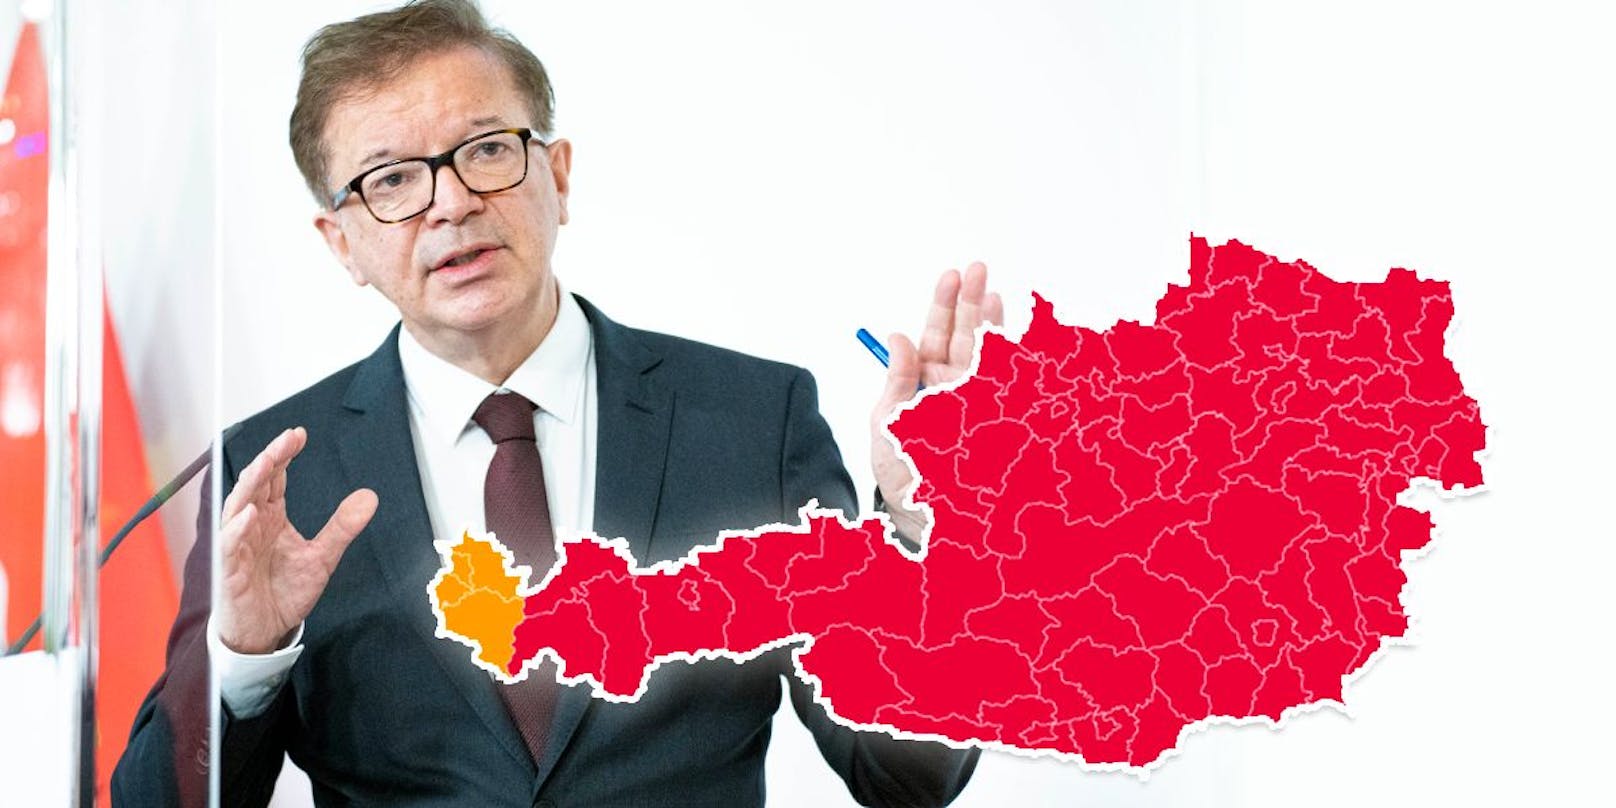 Gesundheitsminister Rudolf Anschober will eine Notbremsung in acht Bundesländern